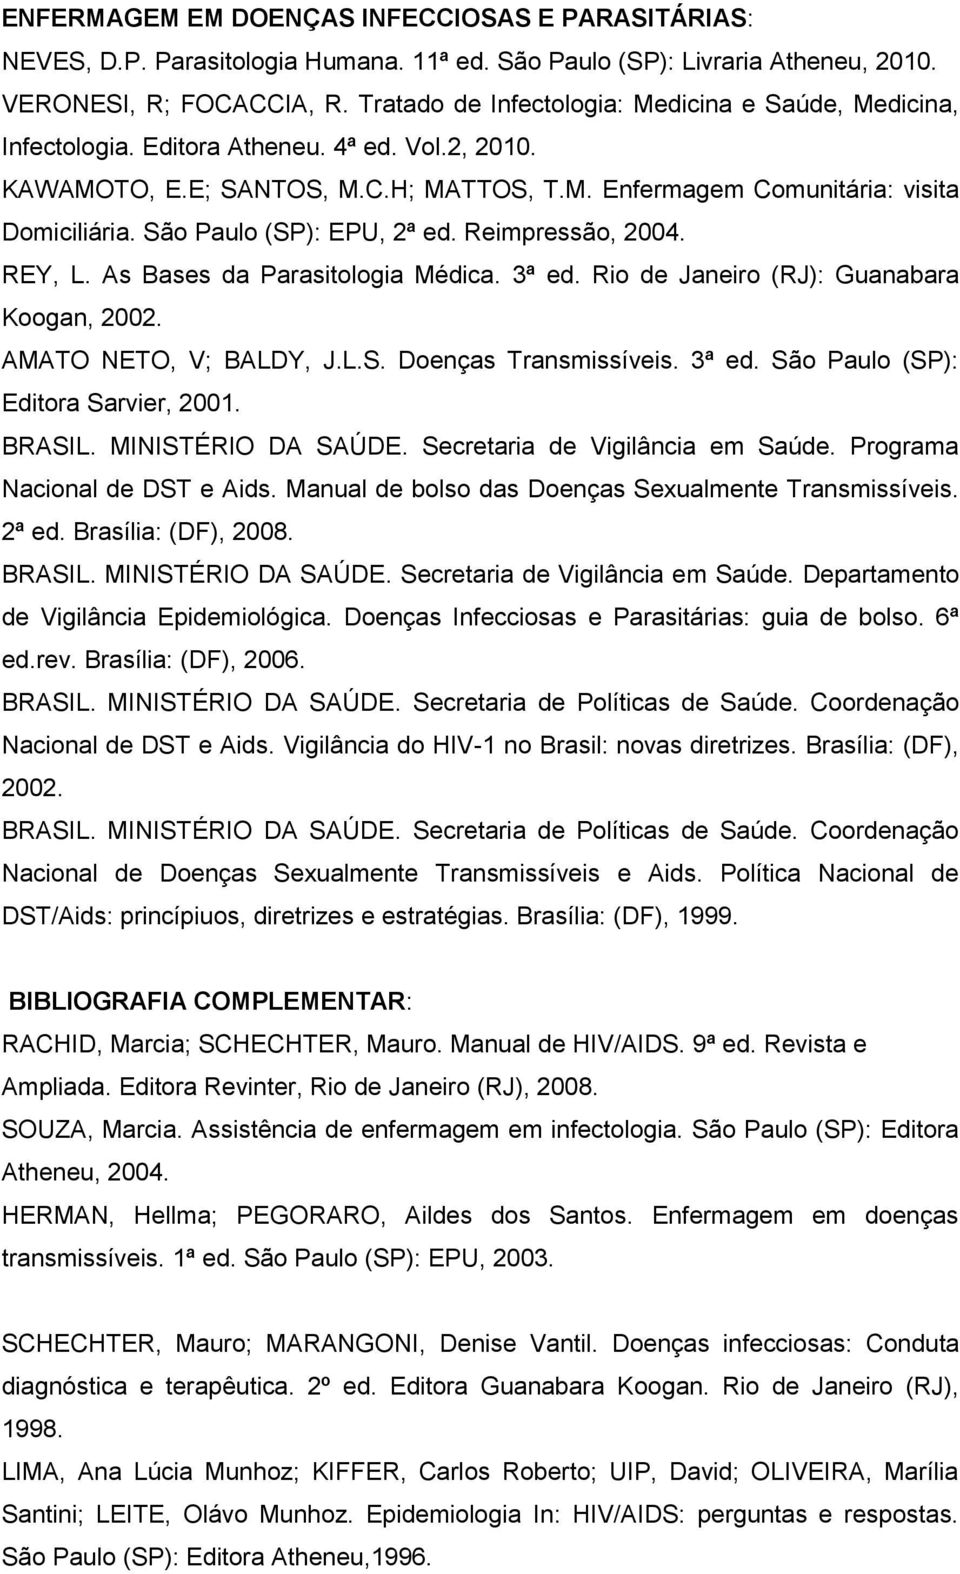 São Paulo (SP): EPU, 2ª ed. Reimpressão, 2004. REY, L. As Bases da Parasitologia Médica. 3ª ed. Rio de Janeiro (RJ): Guanabara Koogan, 2002. AMATO NETO, V; BALDY, J.L.S. Doenças Transmissíveis. 3ª ed. São Paulo (SP): Editora Sarvier, 2001.